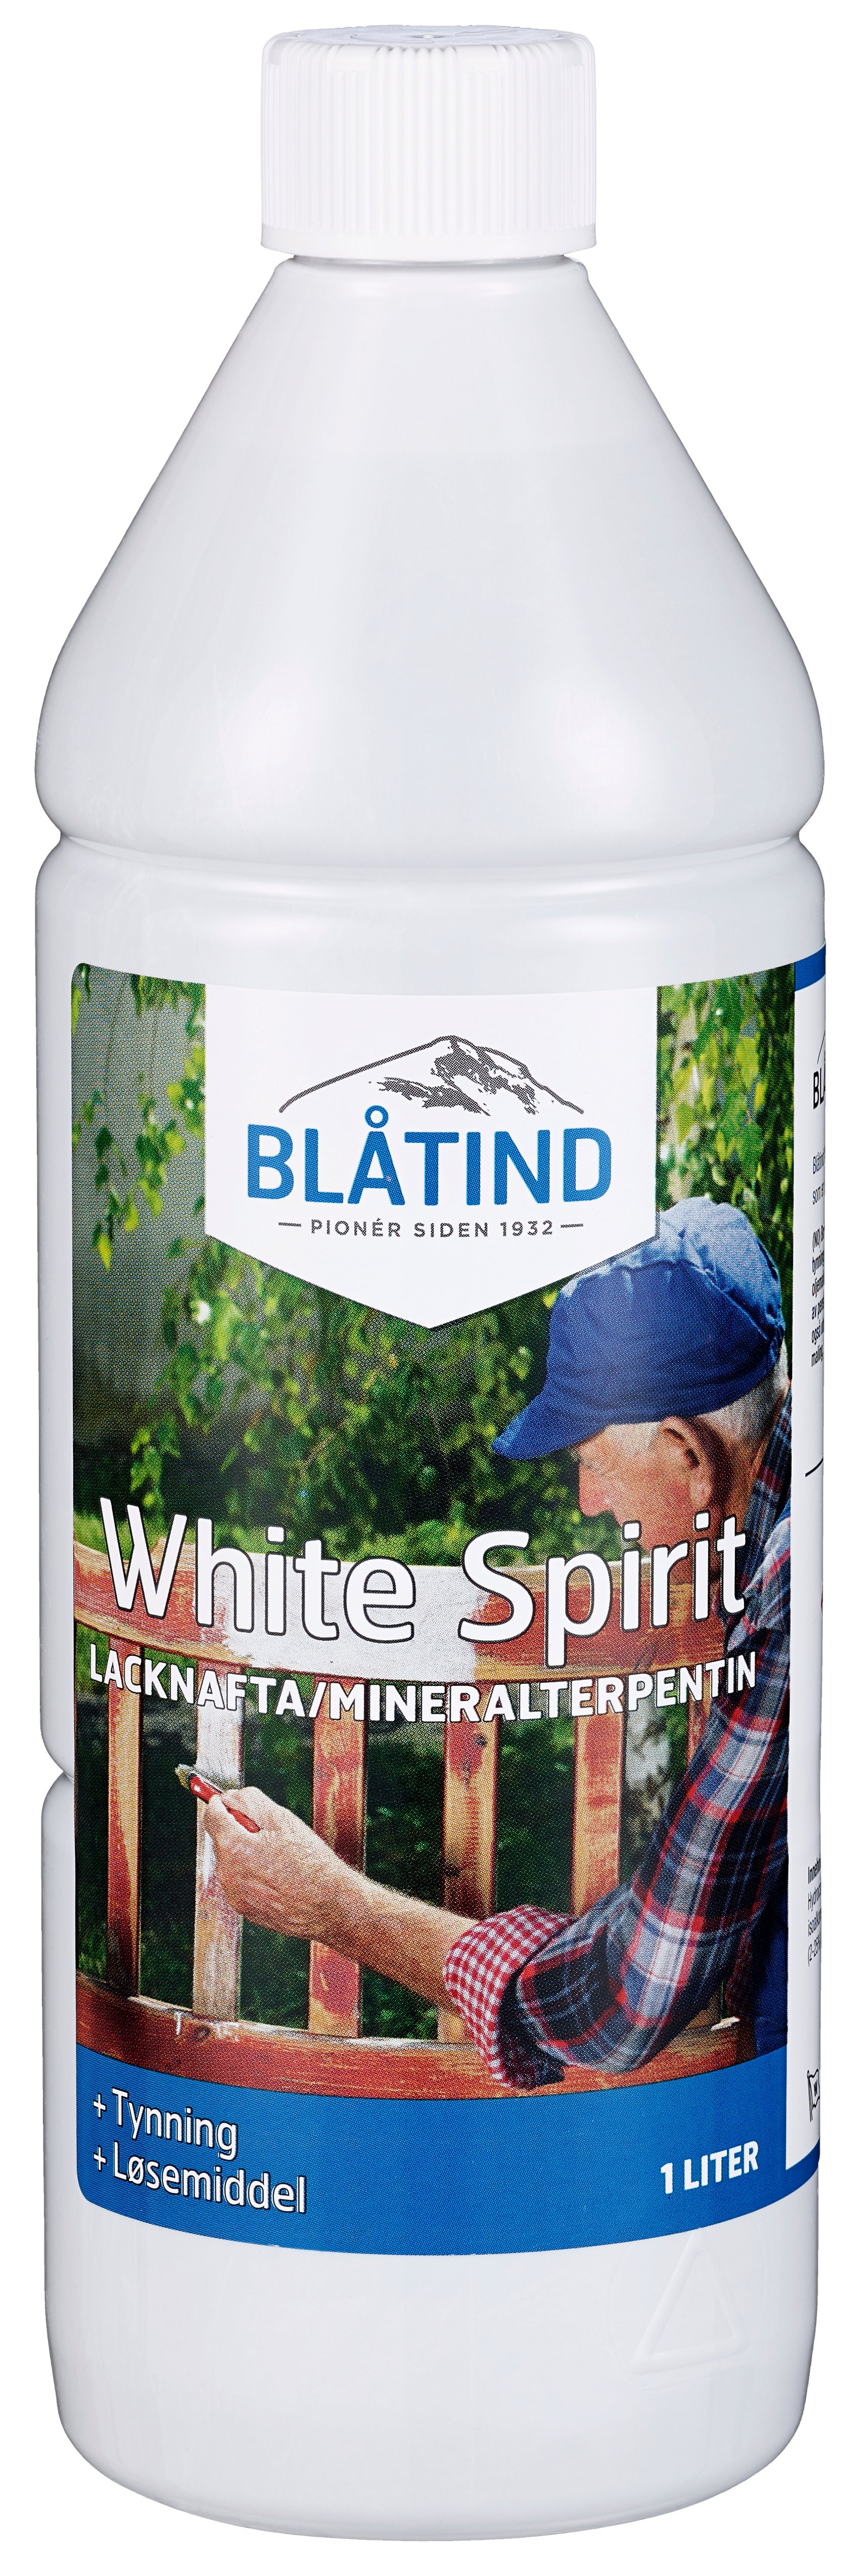 Produkt miniatyrebild Blåtind White Spirit